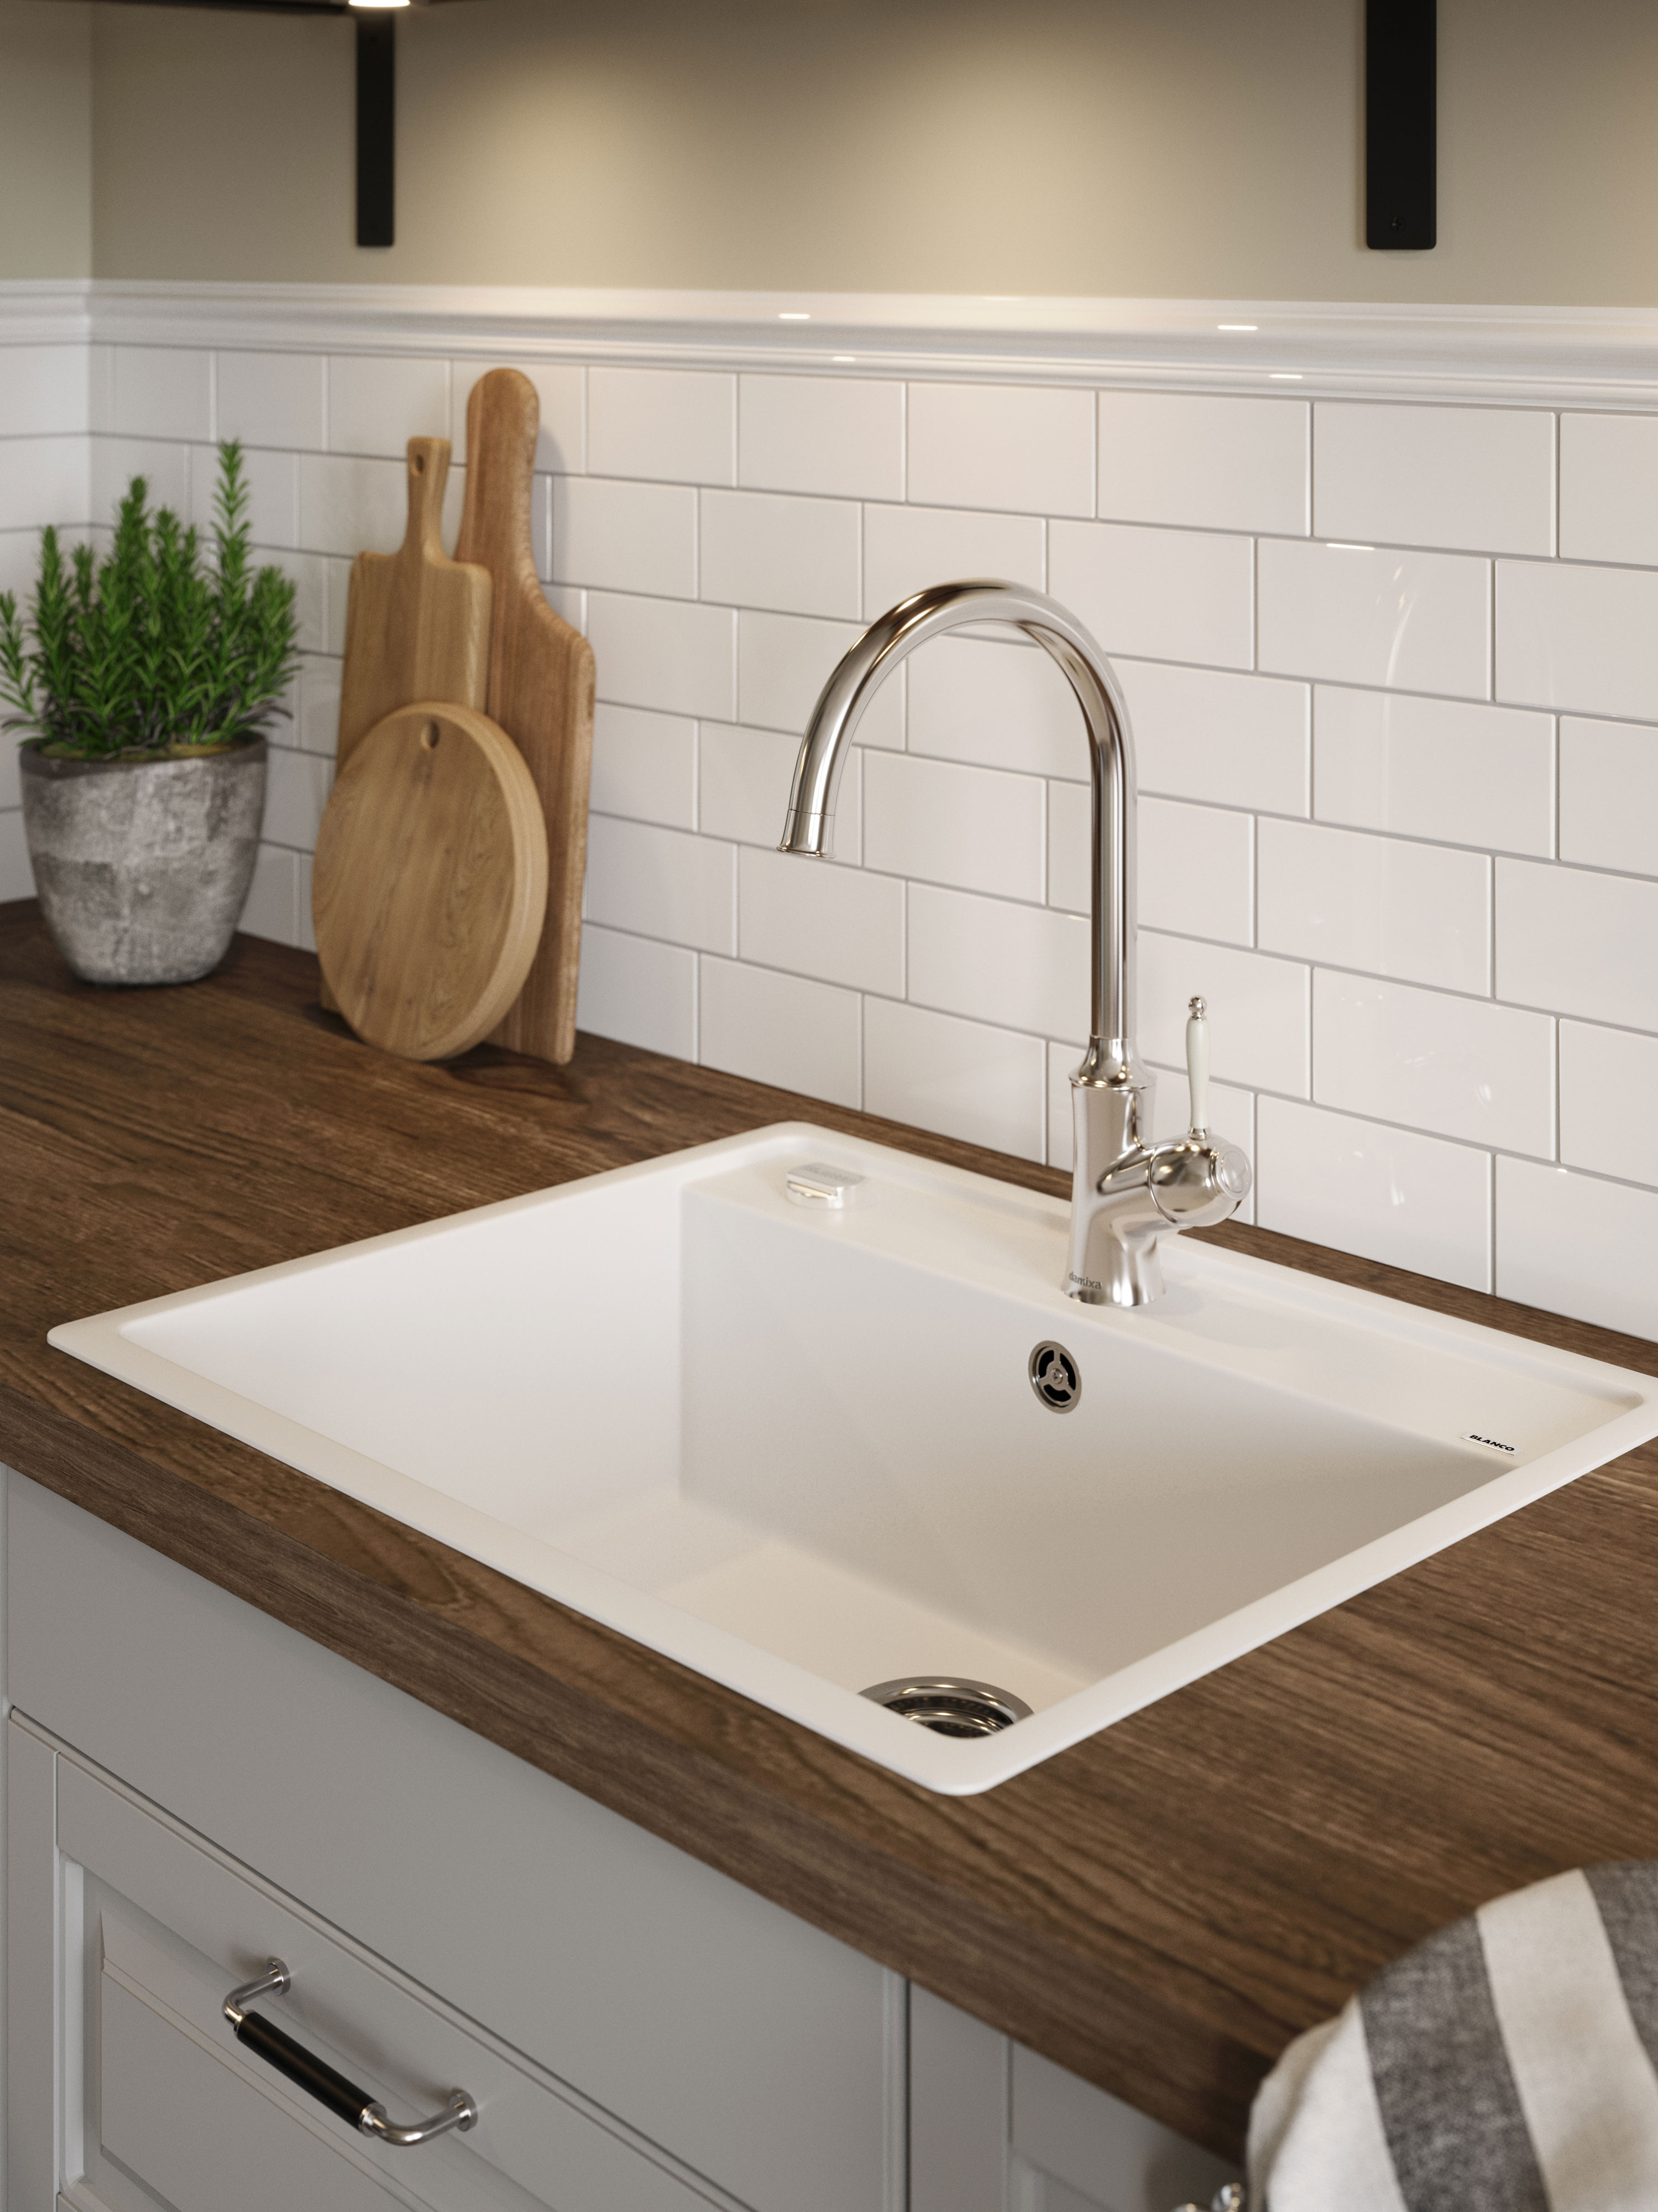 EPOQ - Perfect kitchen - White Epoq Kitchen with brown wooden worktop